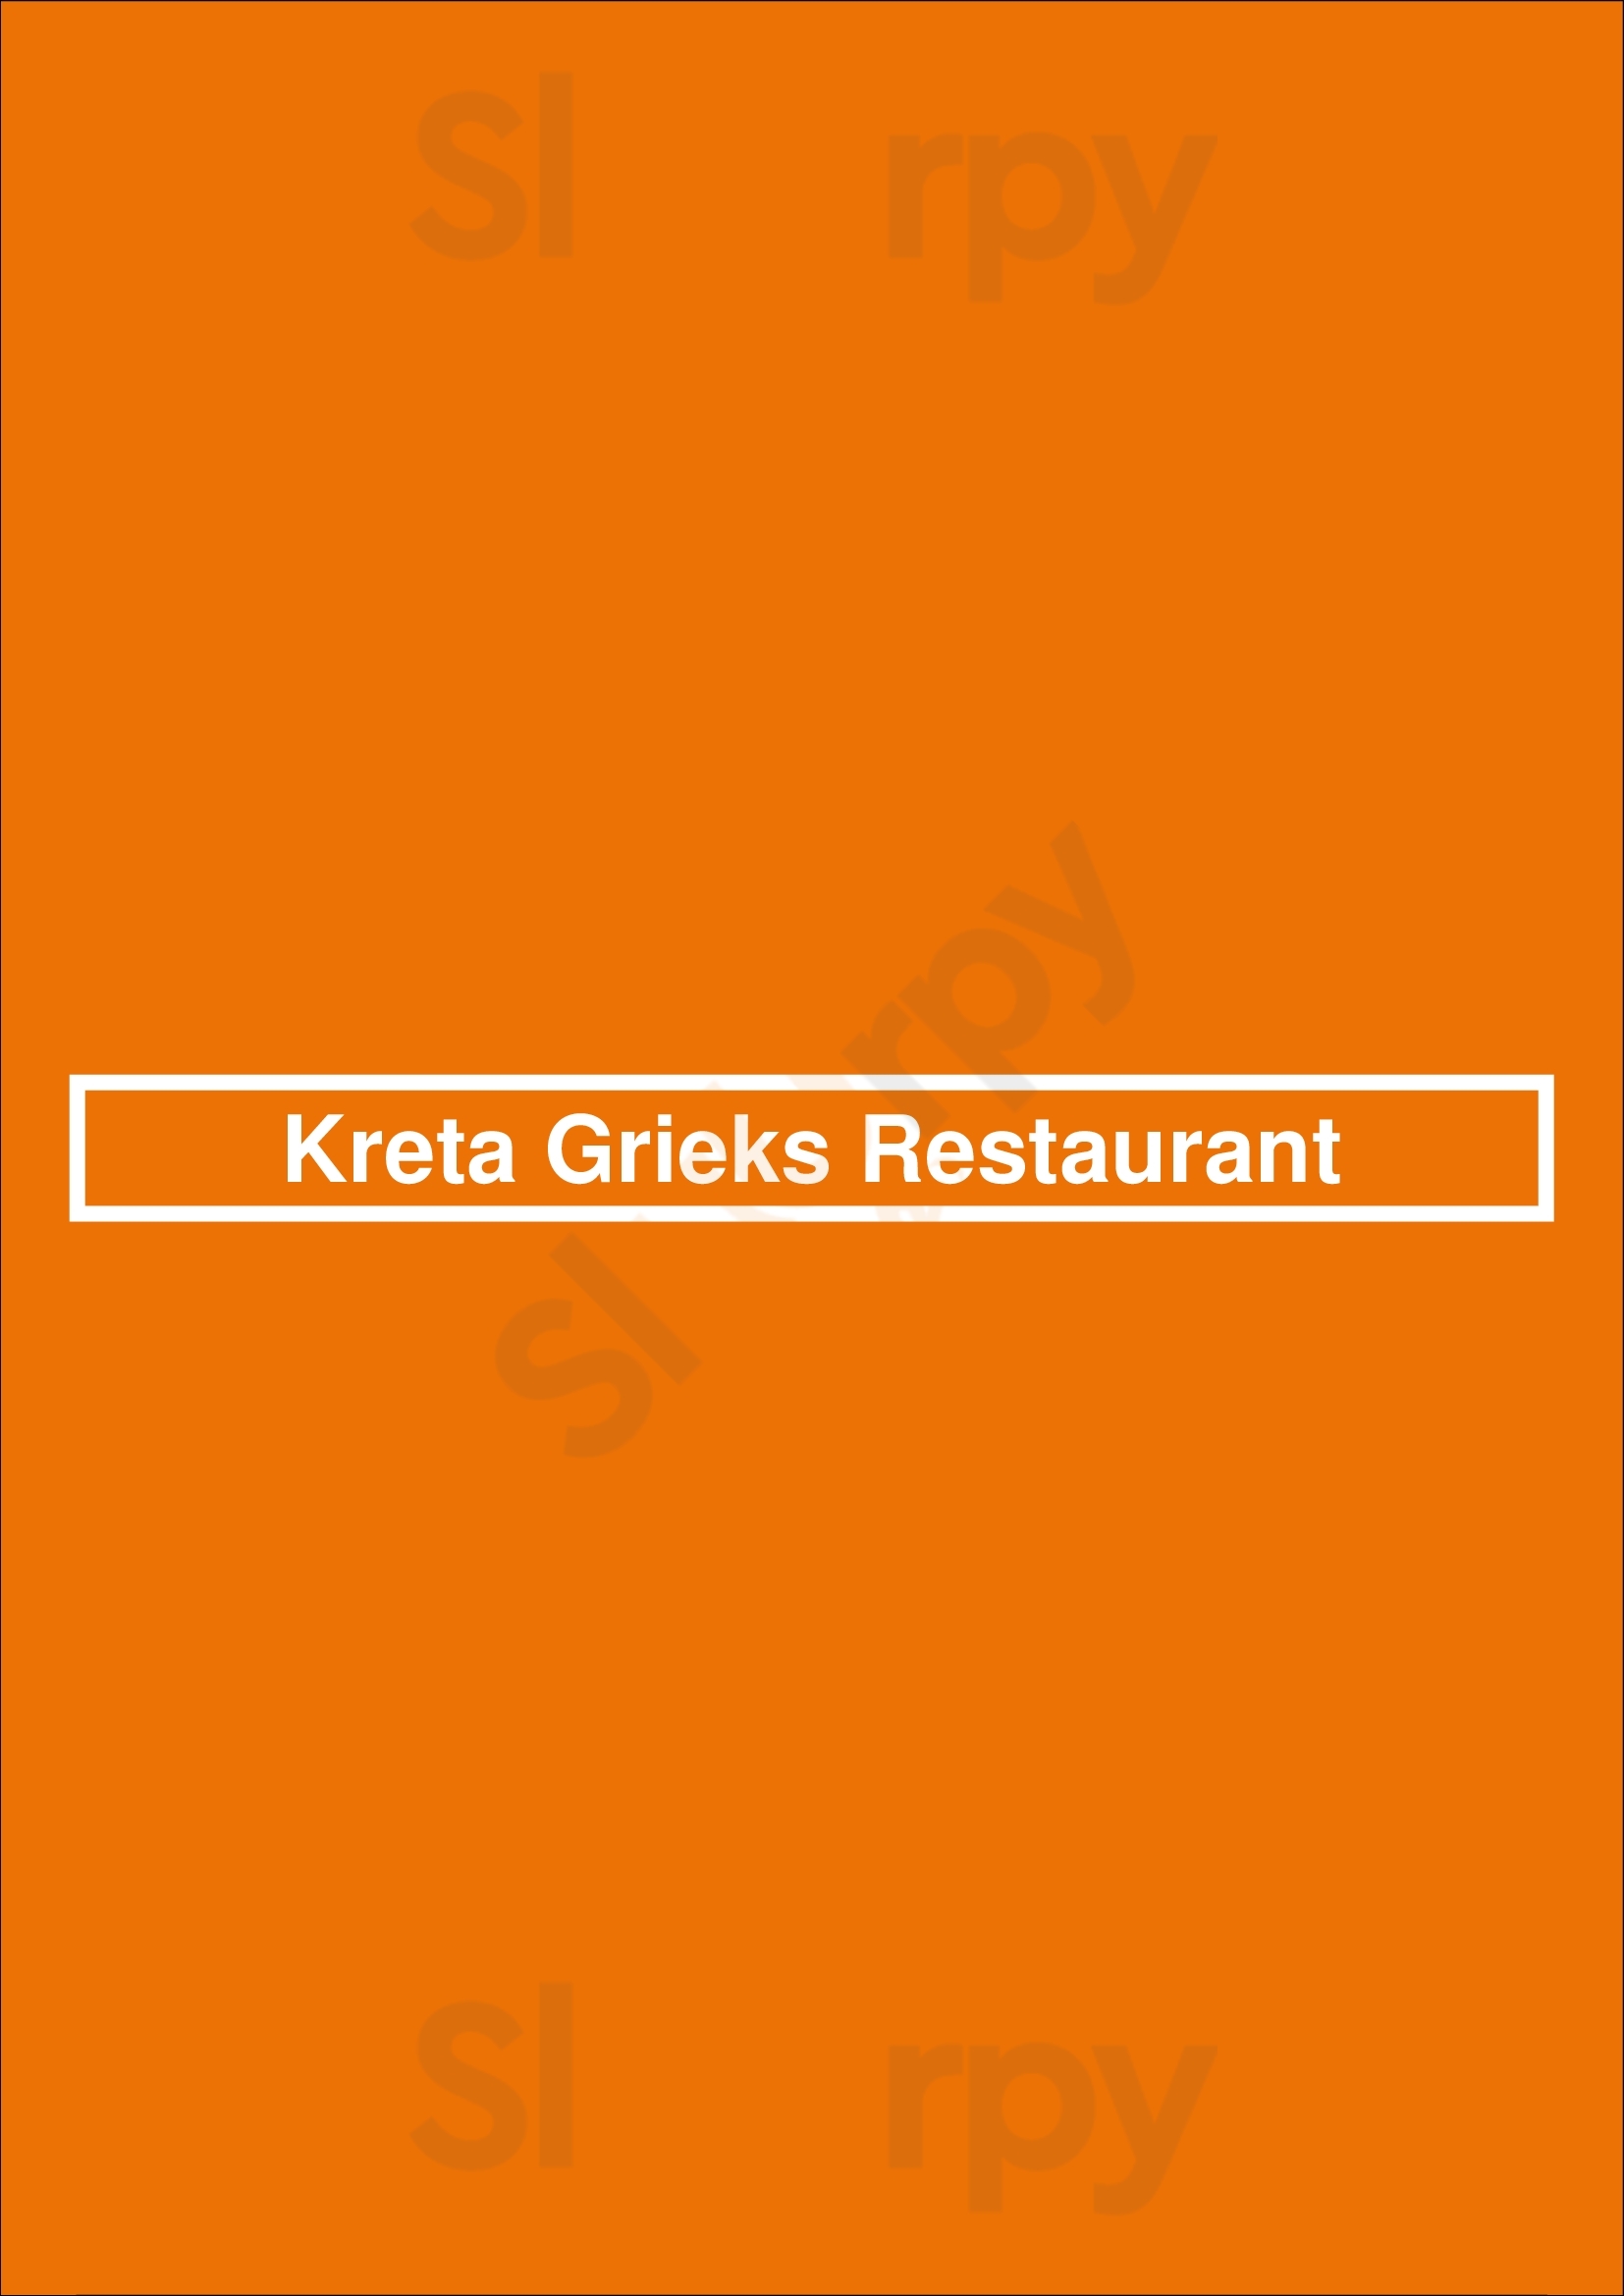 Kreta Grieks Restaurant Waddinxveen Menu - 1